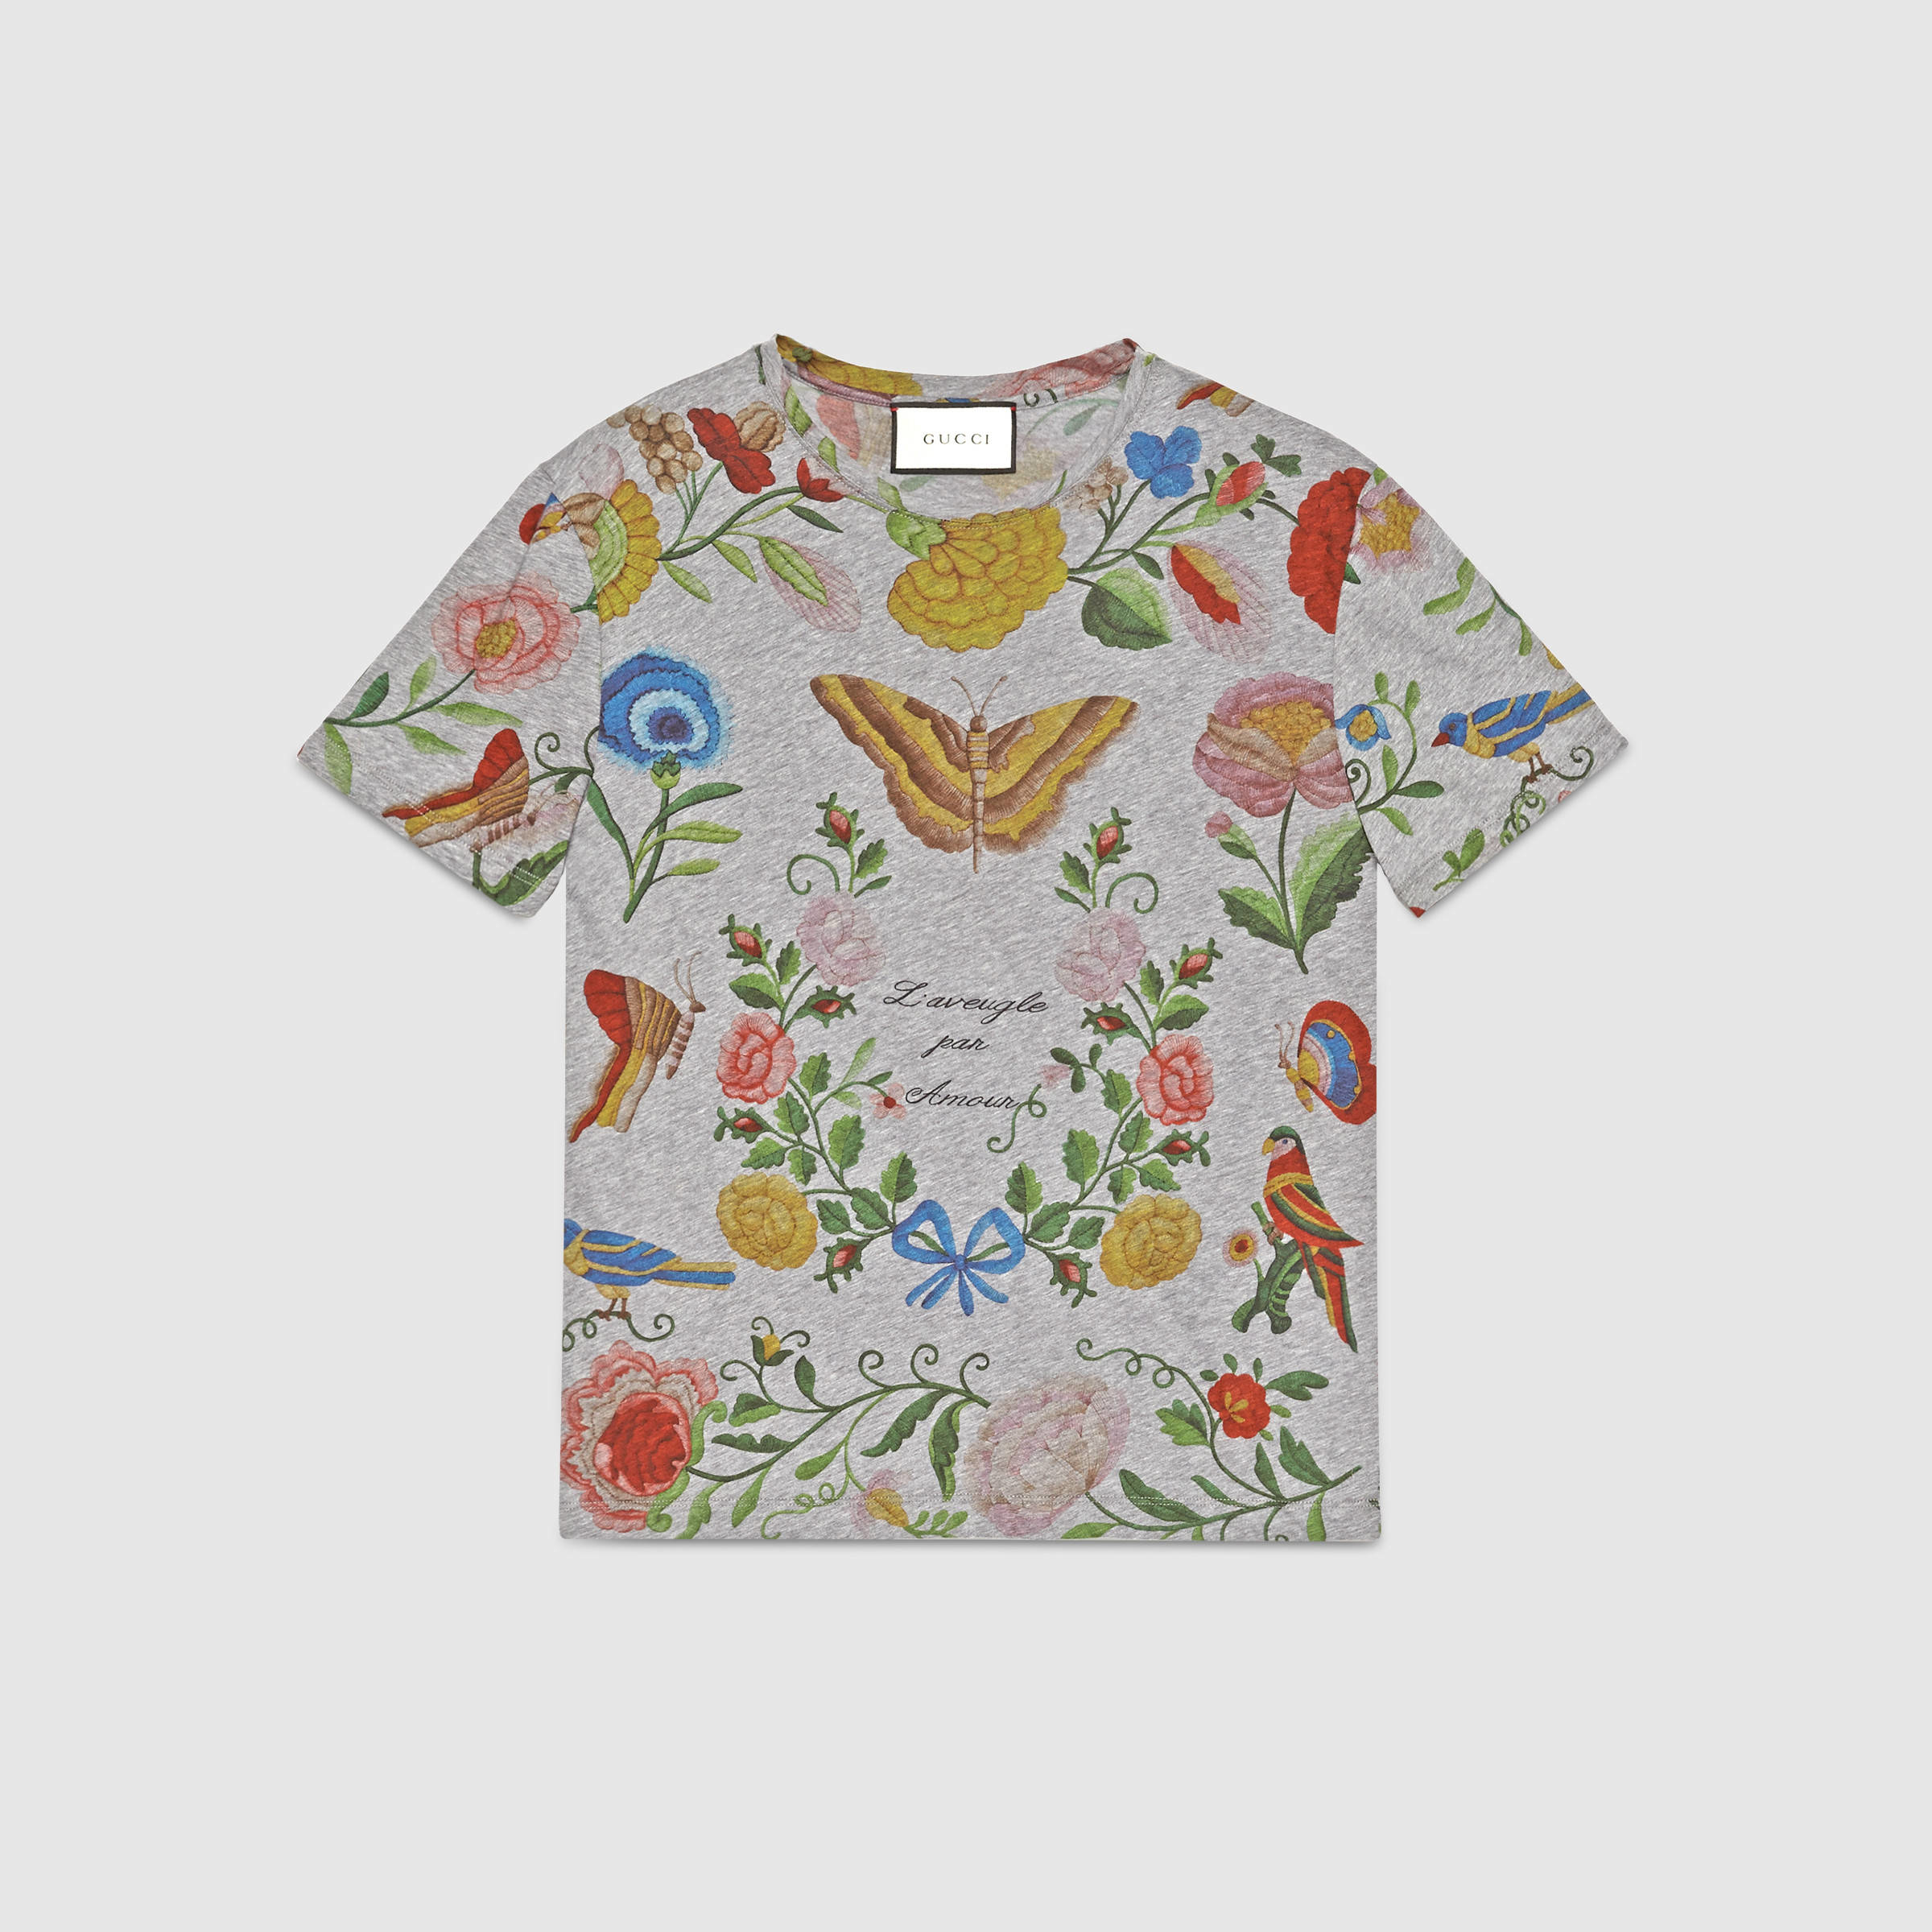 gucci floral mens shirt